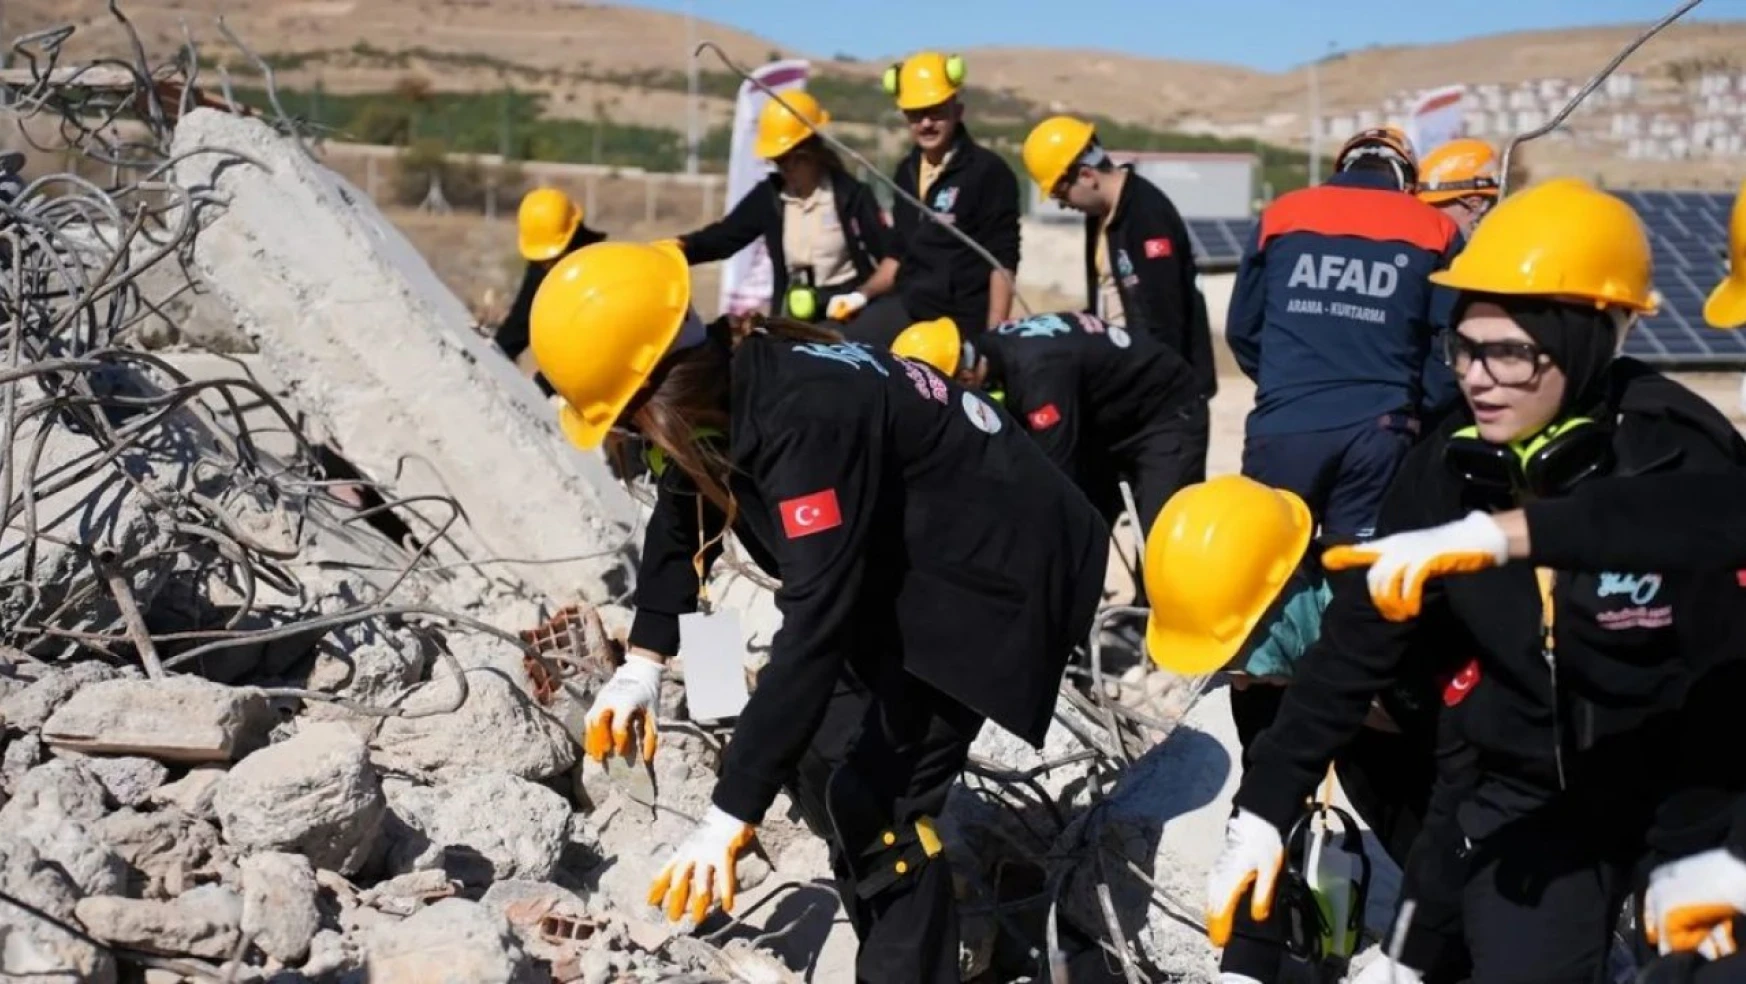 İpekyolu'nda 60 gönüllü ile gerçeği aratmayan deprem tatbikatı